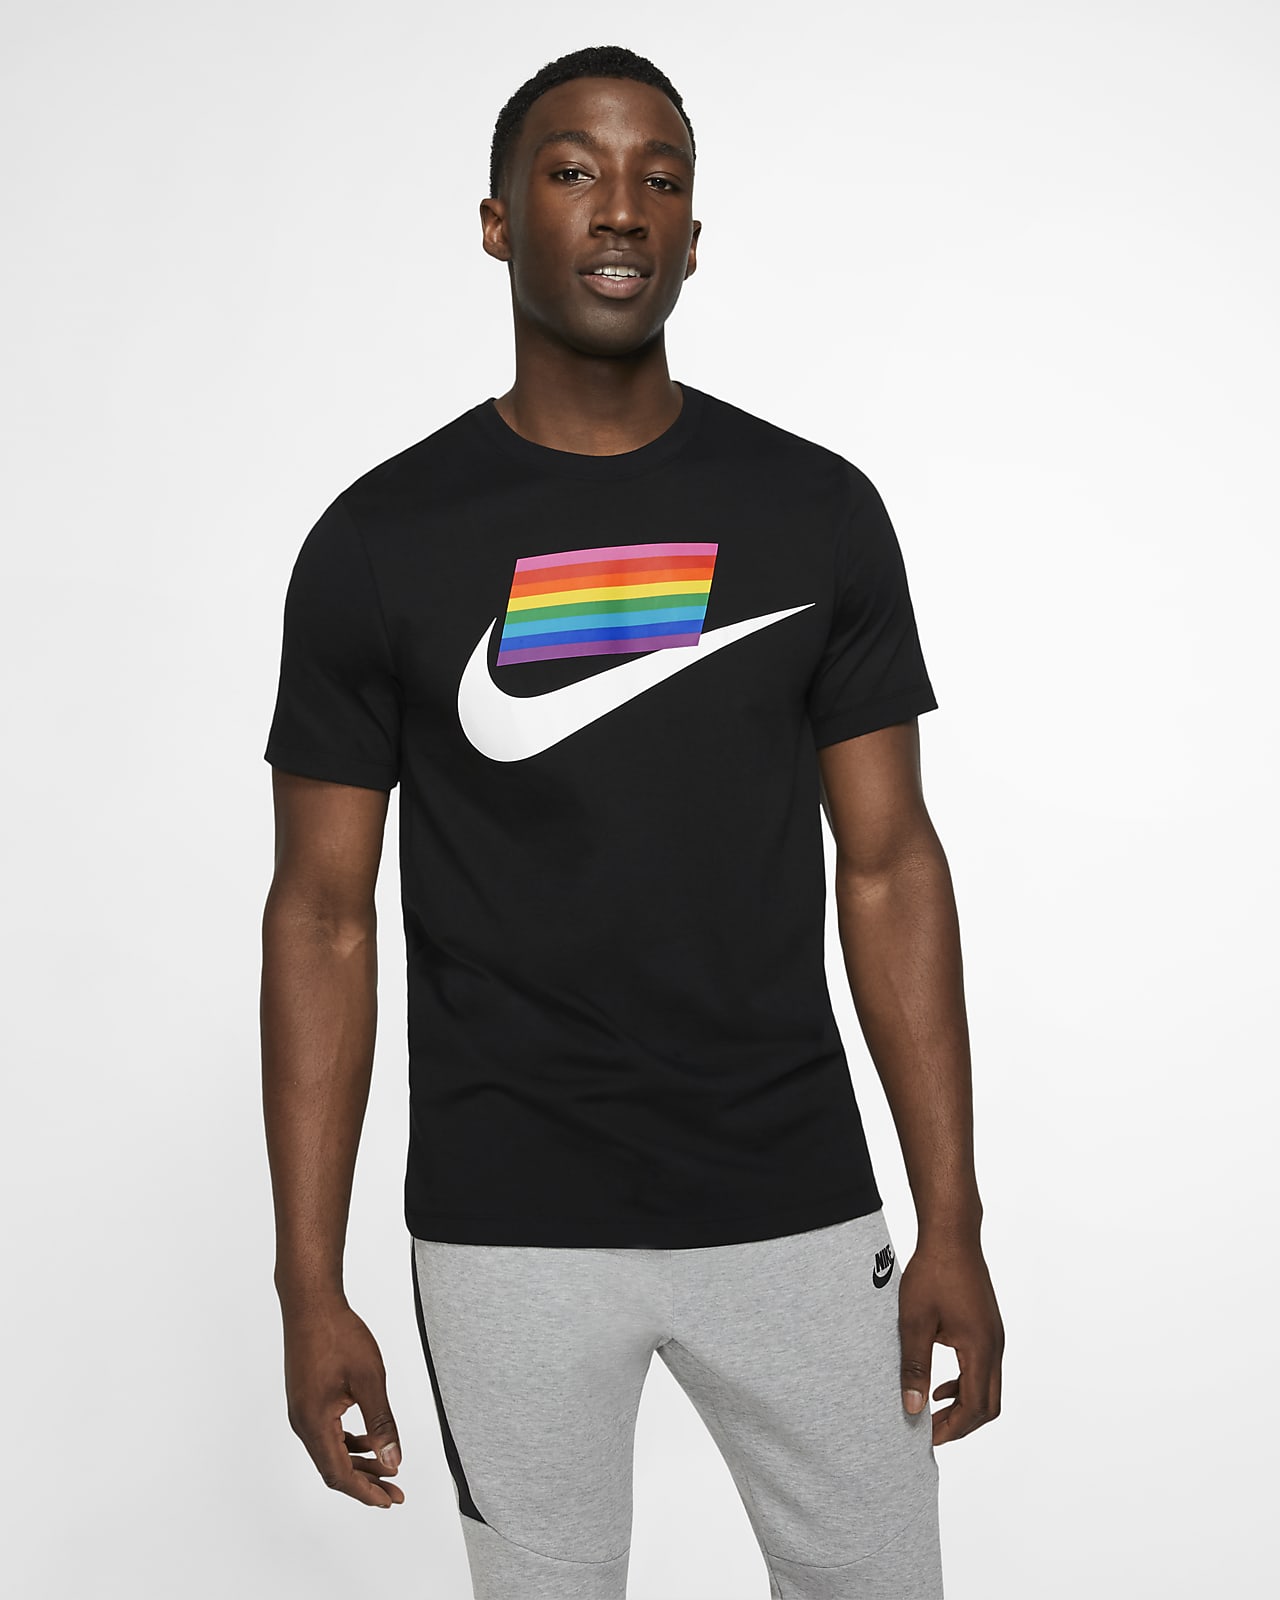 Nike Sportswear BETRUE 男子T恤